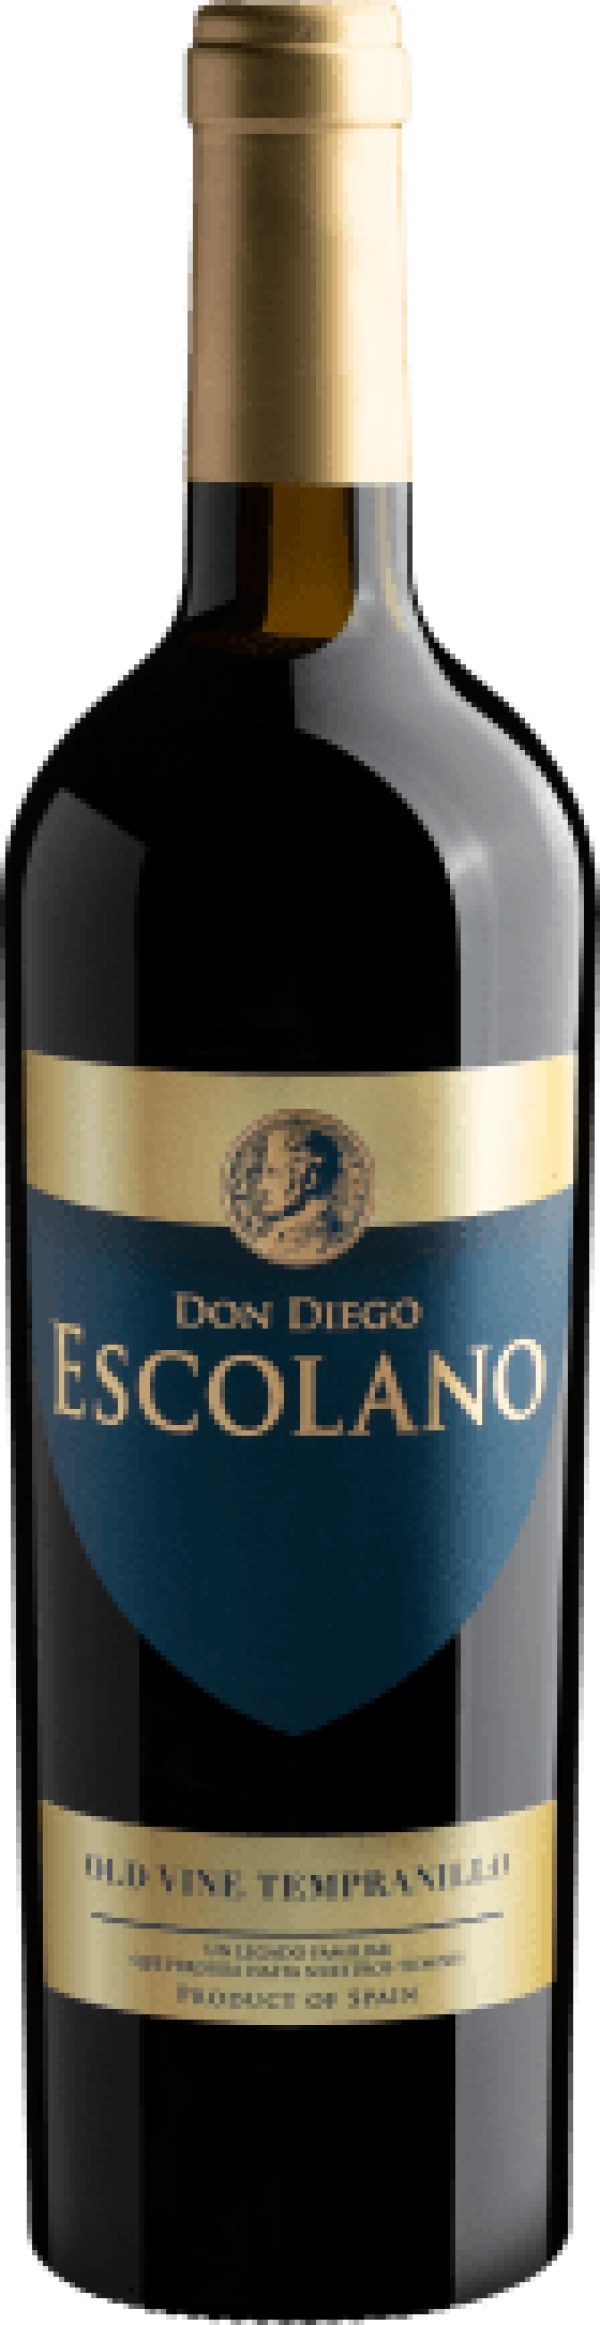 Don Diego Escolano Old Vine Tempranillo Cariñena DOP 2020